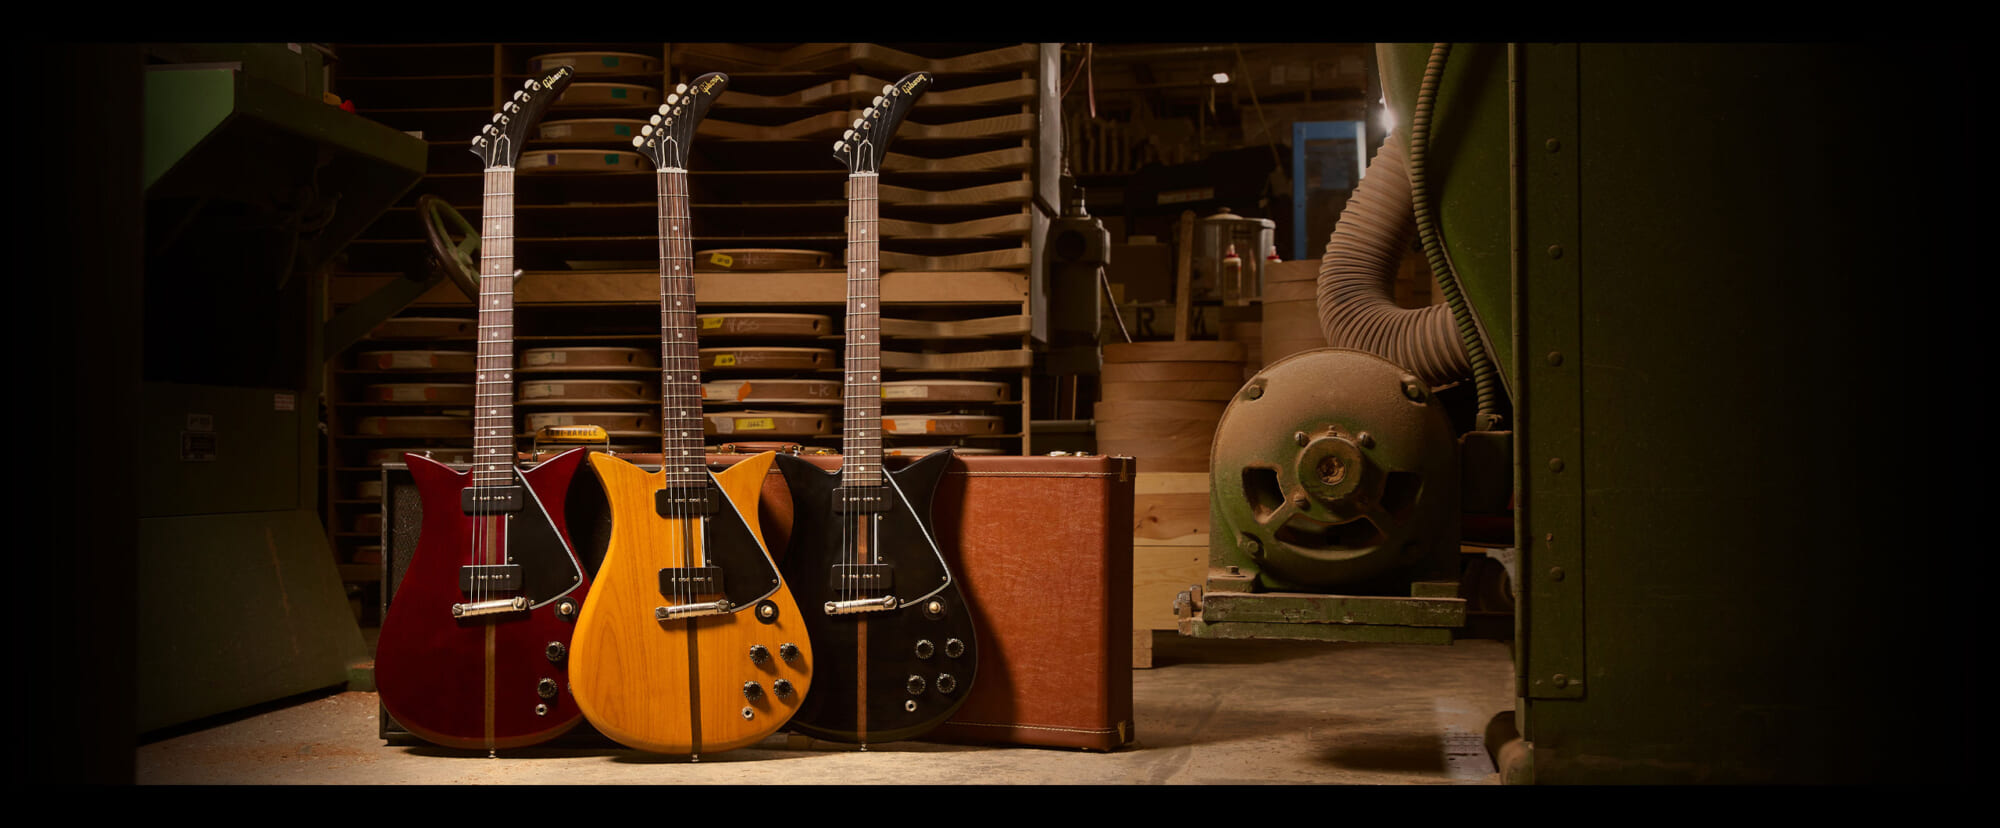 ギブソン、伝説の元社長テッド・マッカーティが1957年にデザインしたギター“セオドア”をリリース